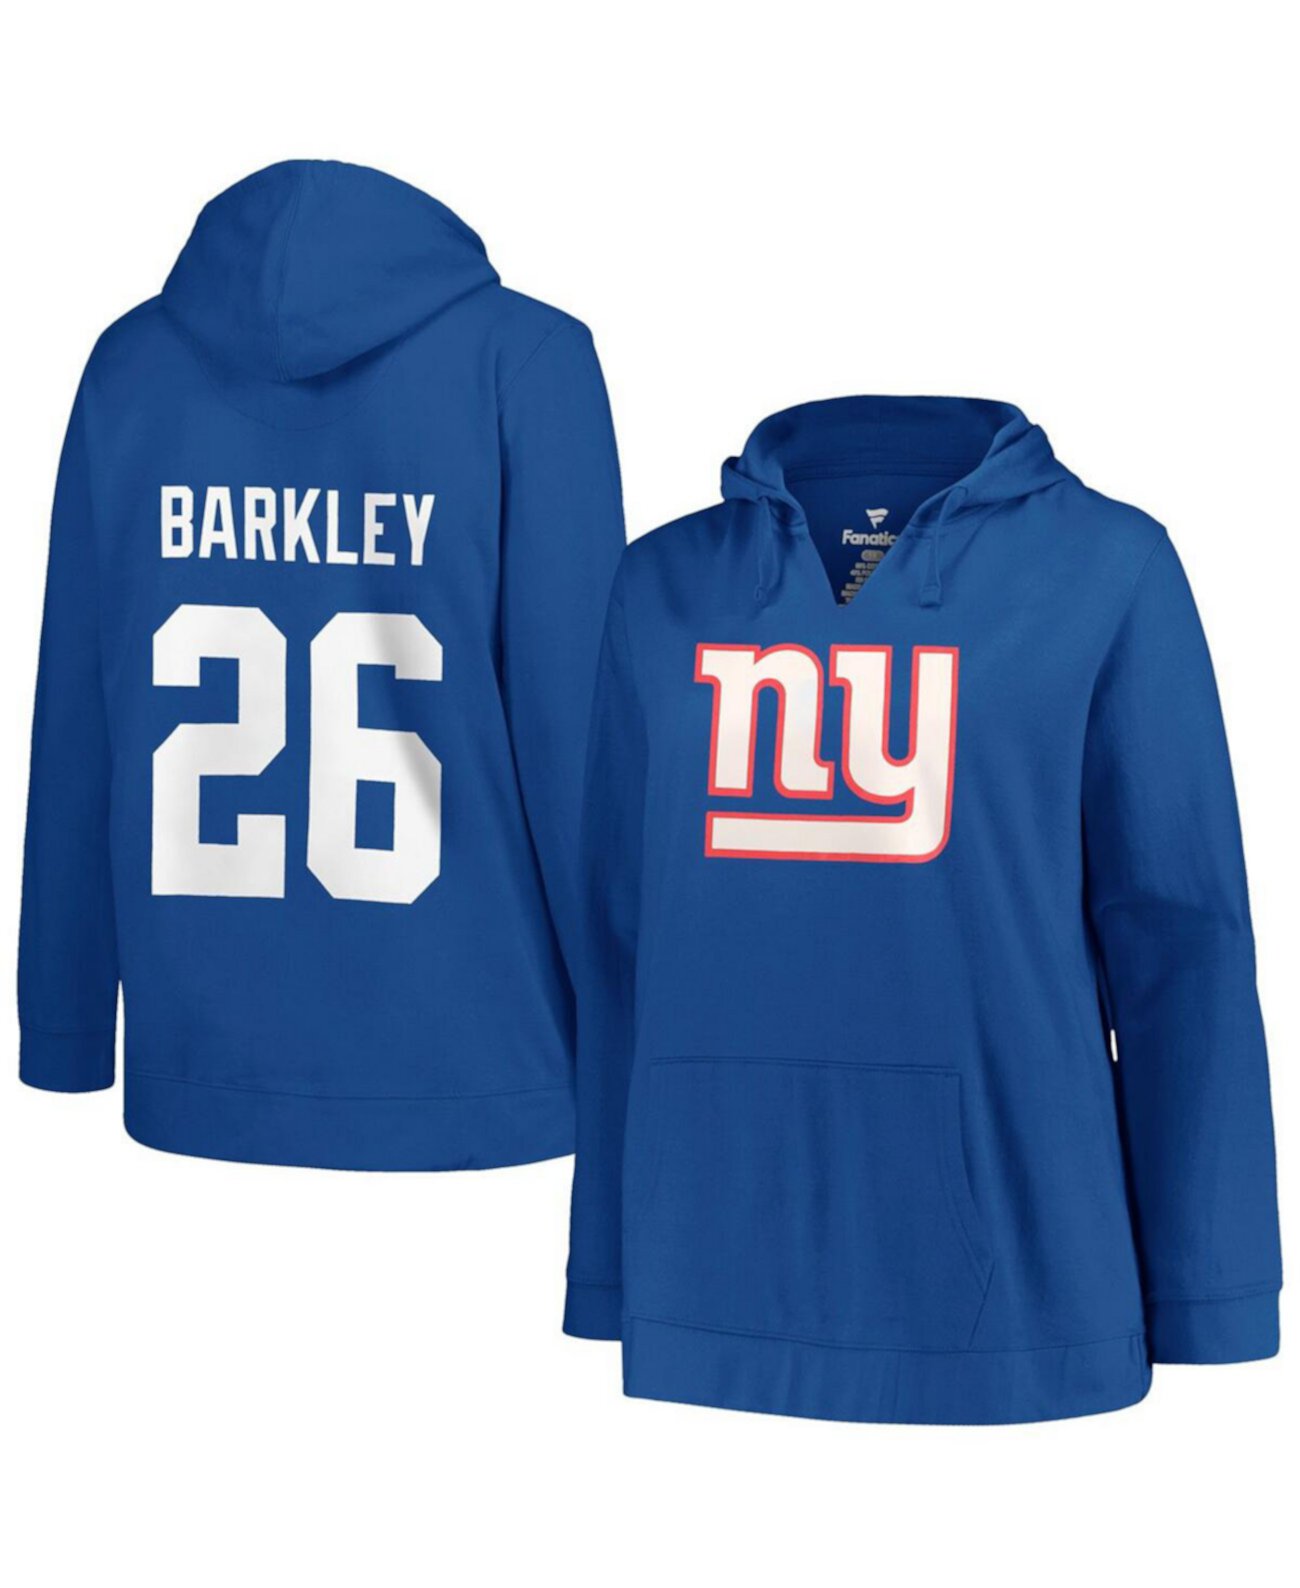 Женский пуловер с капюшоном Saquon Barkley Royal New York Giants больших размеров с именем и номером игрока Profile